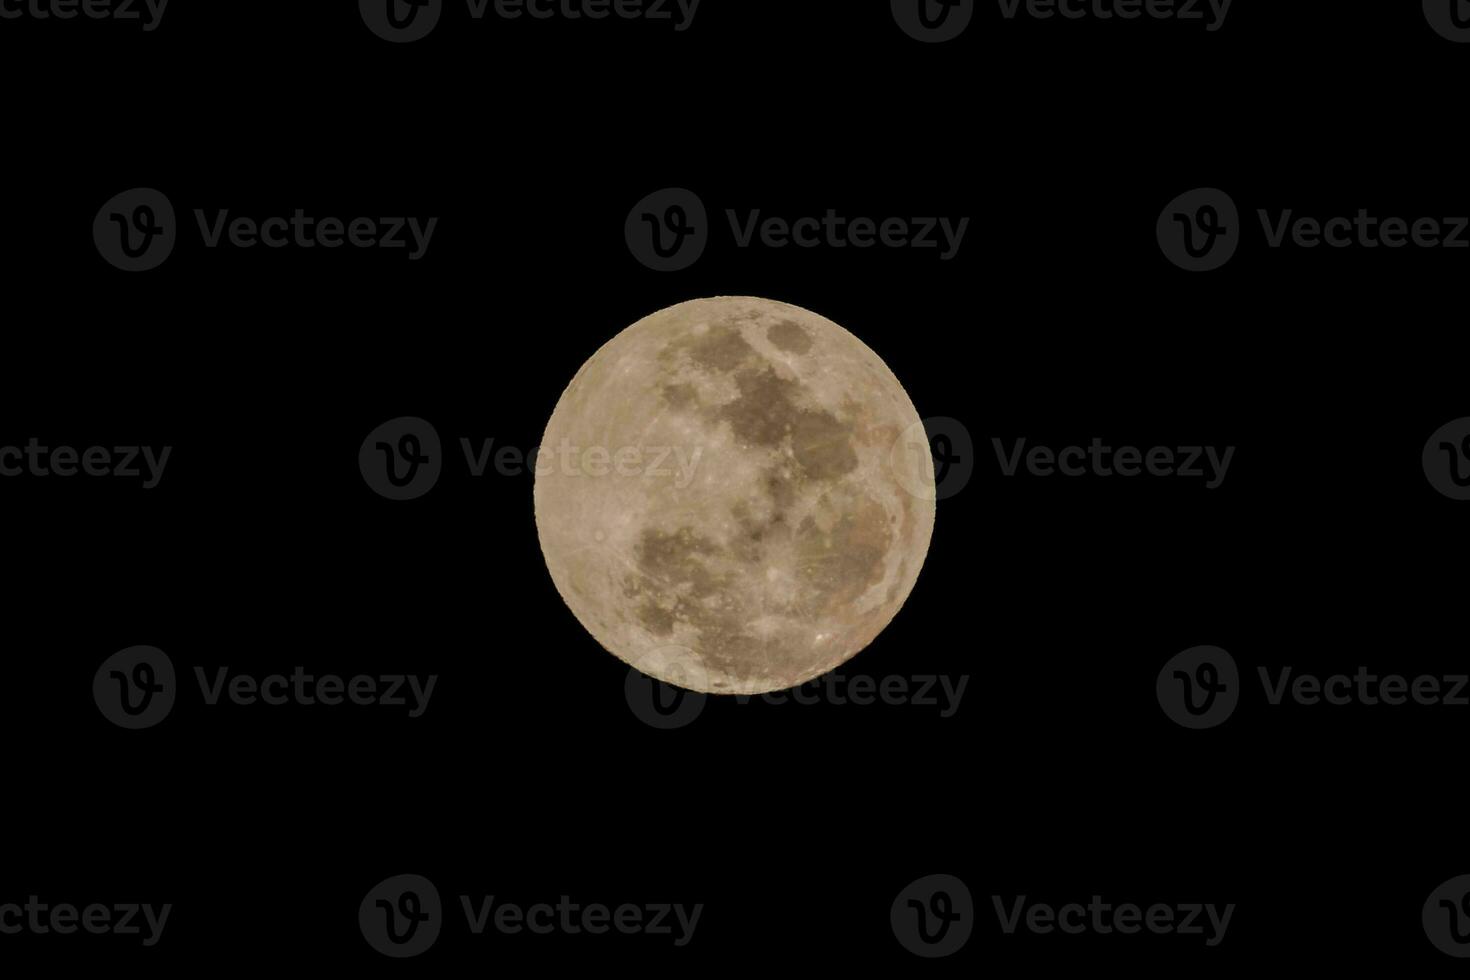 el lleno Luna es visto en el oscuro cielo foto